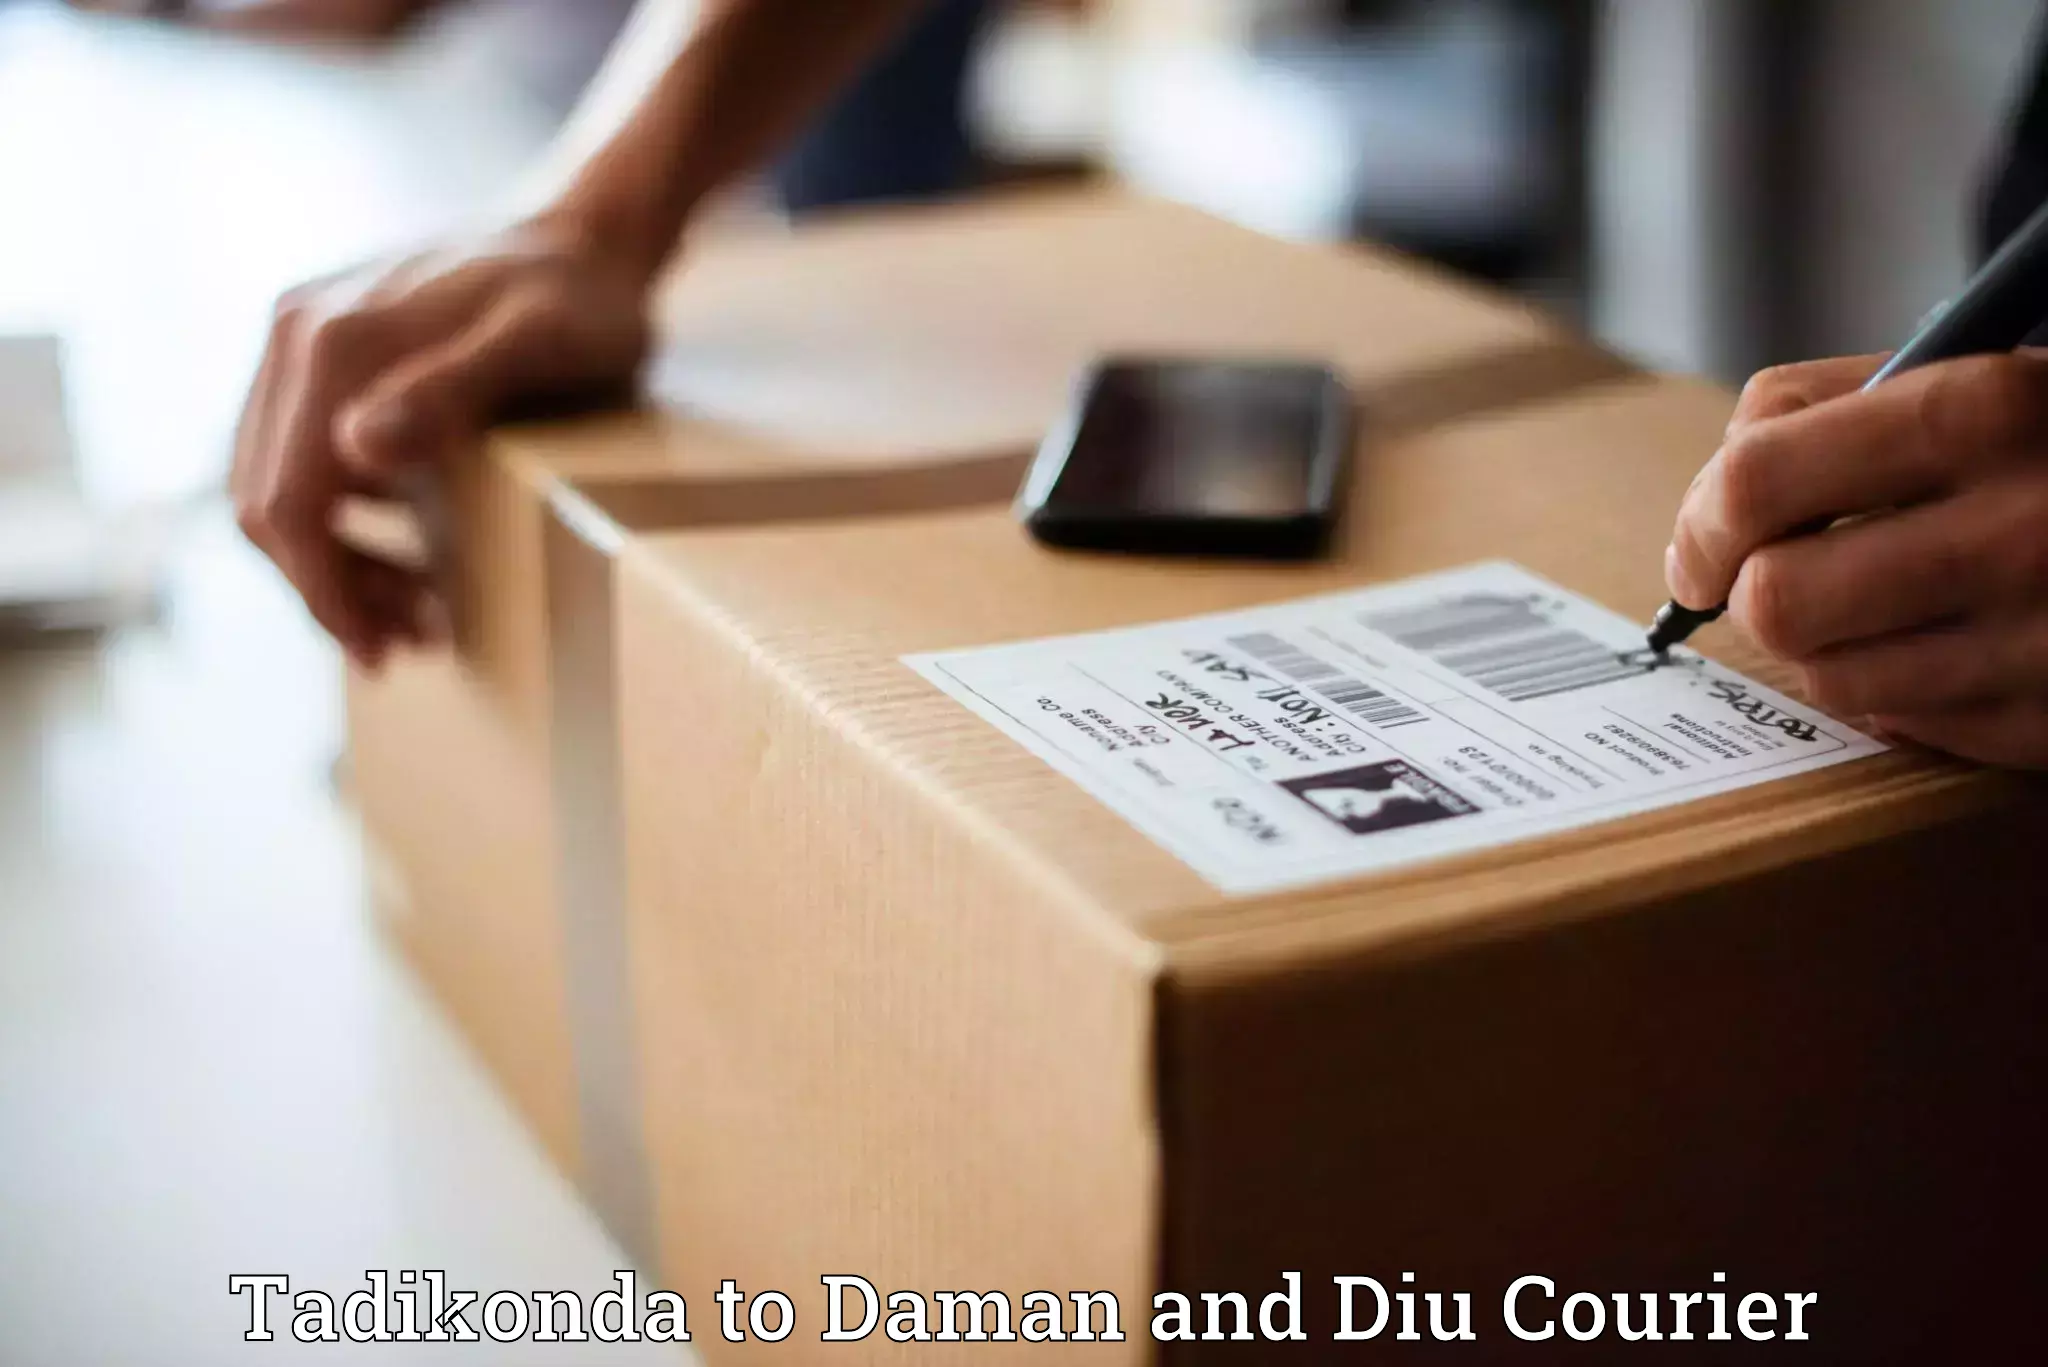 Urgent courier needs Tadikonda to Daman and Diu